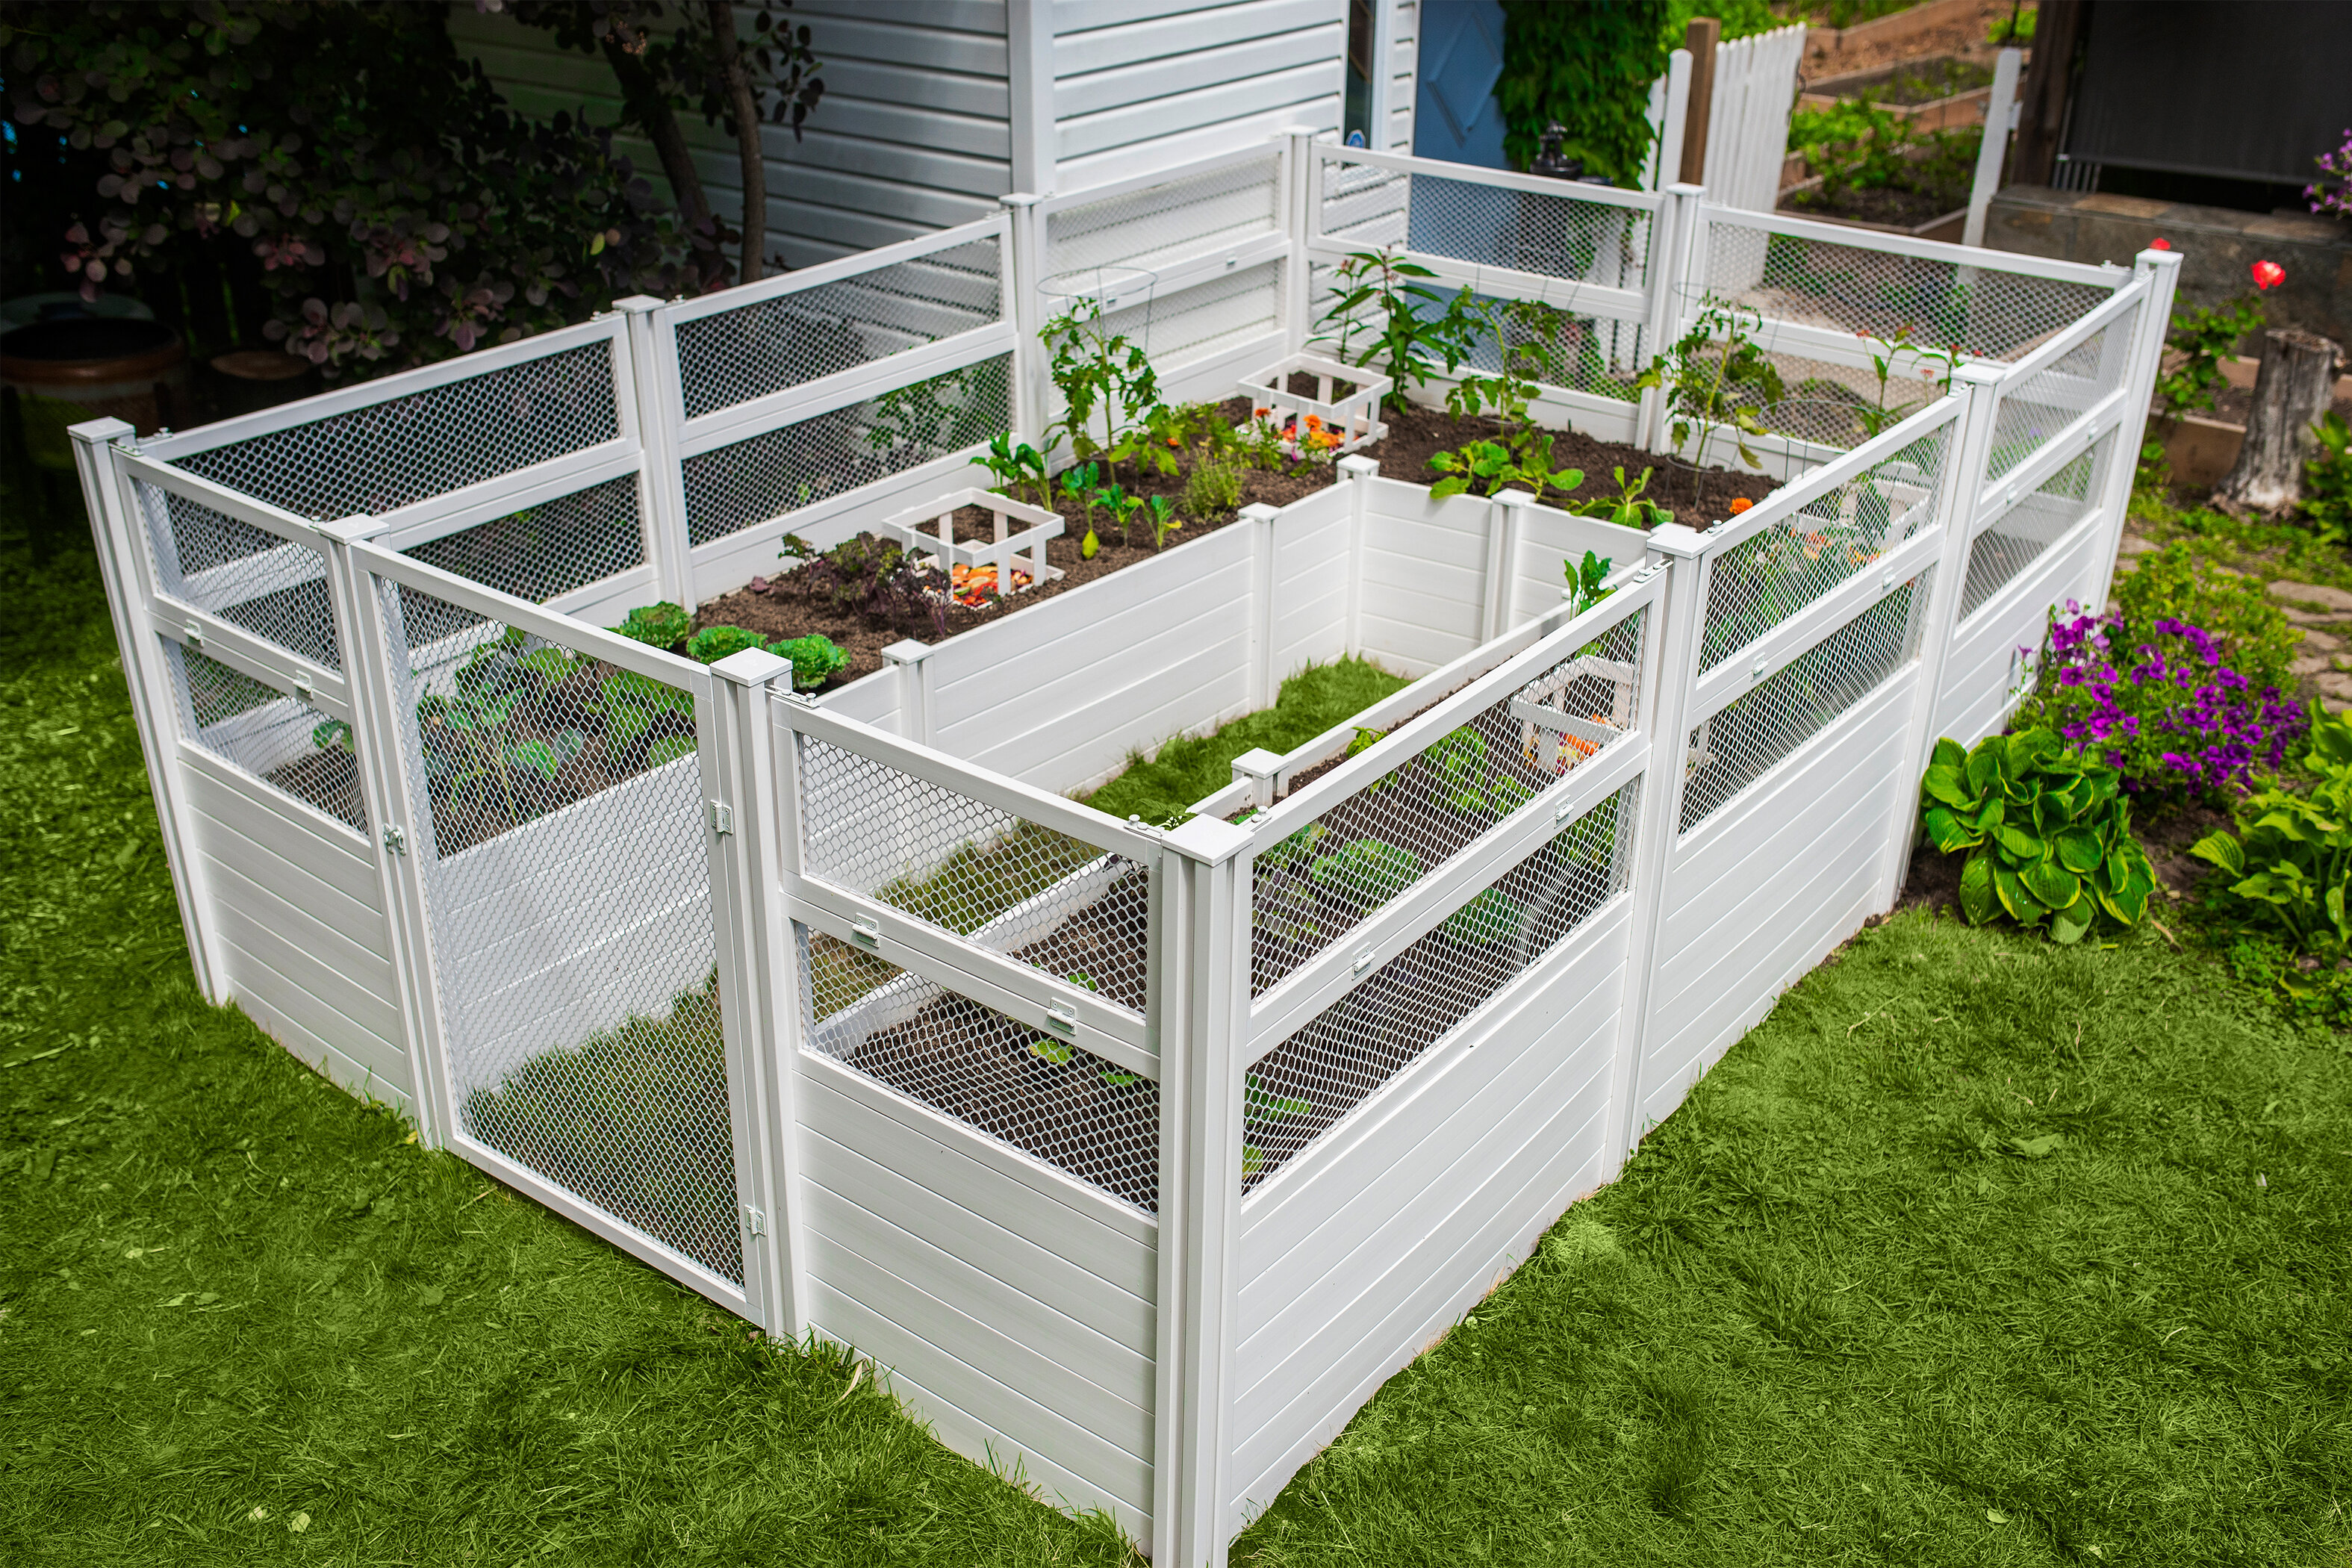 https://assets.wfcdn.com/im/73767228/compr-r85/1786/178609342/8-ft-x-12-ft-keyhole-composting-vinyl-raised-garden-bed.jpg